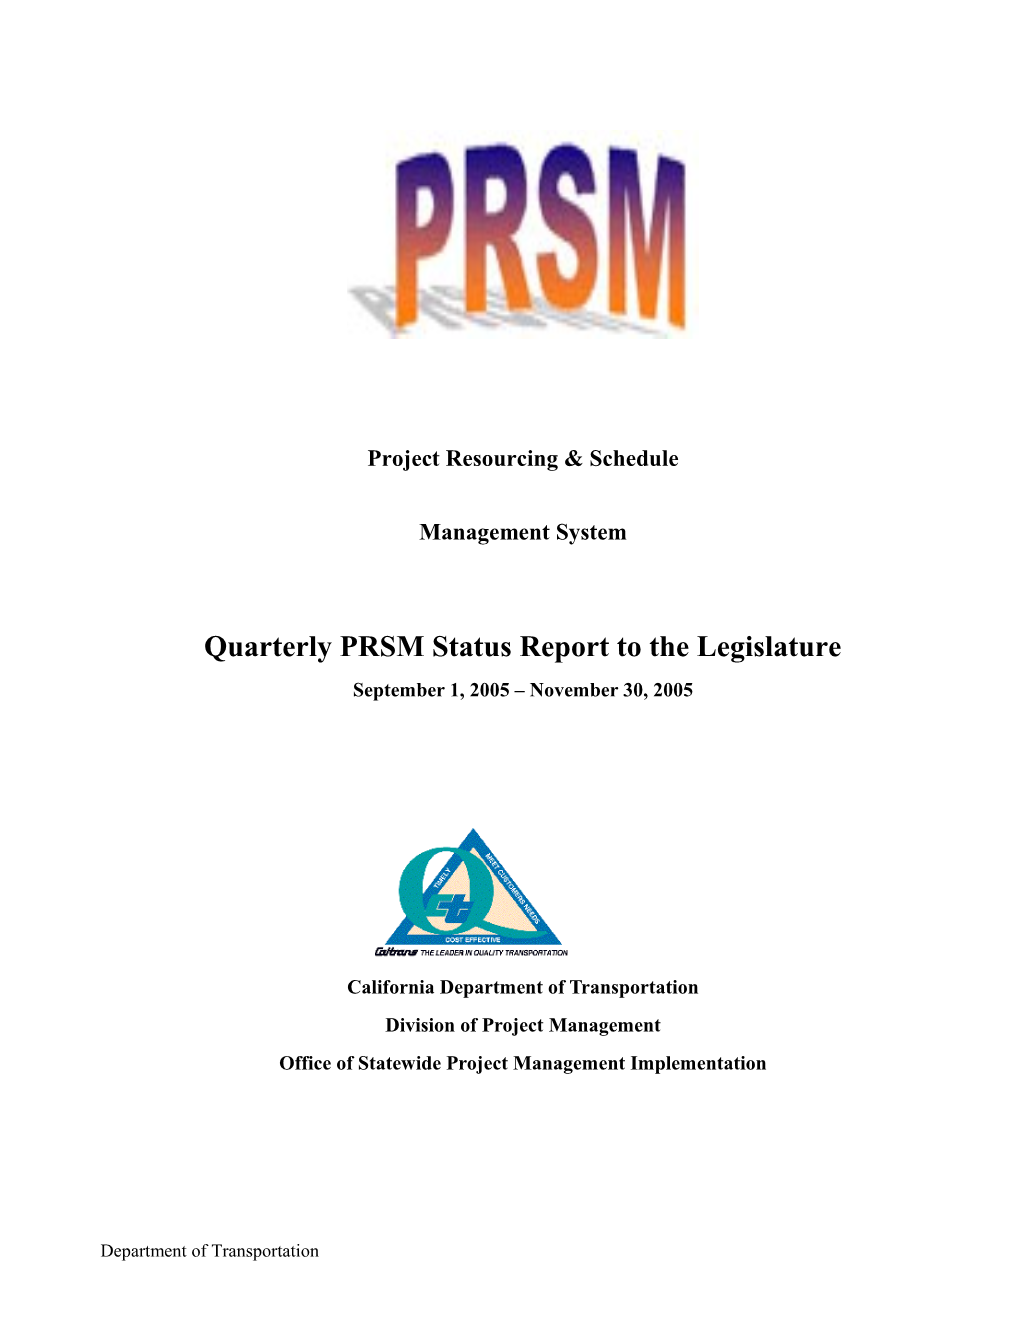 Quarterly Status Report to the Legislature s1